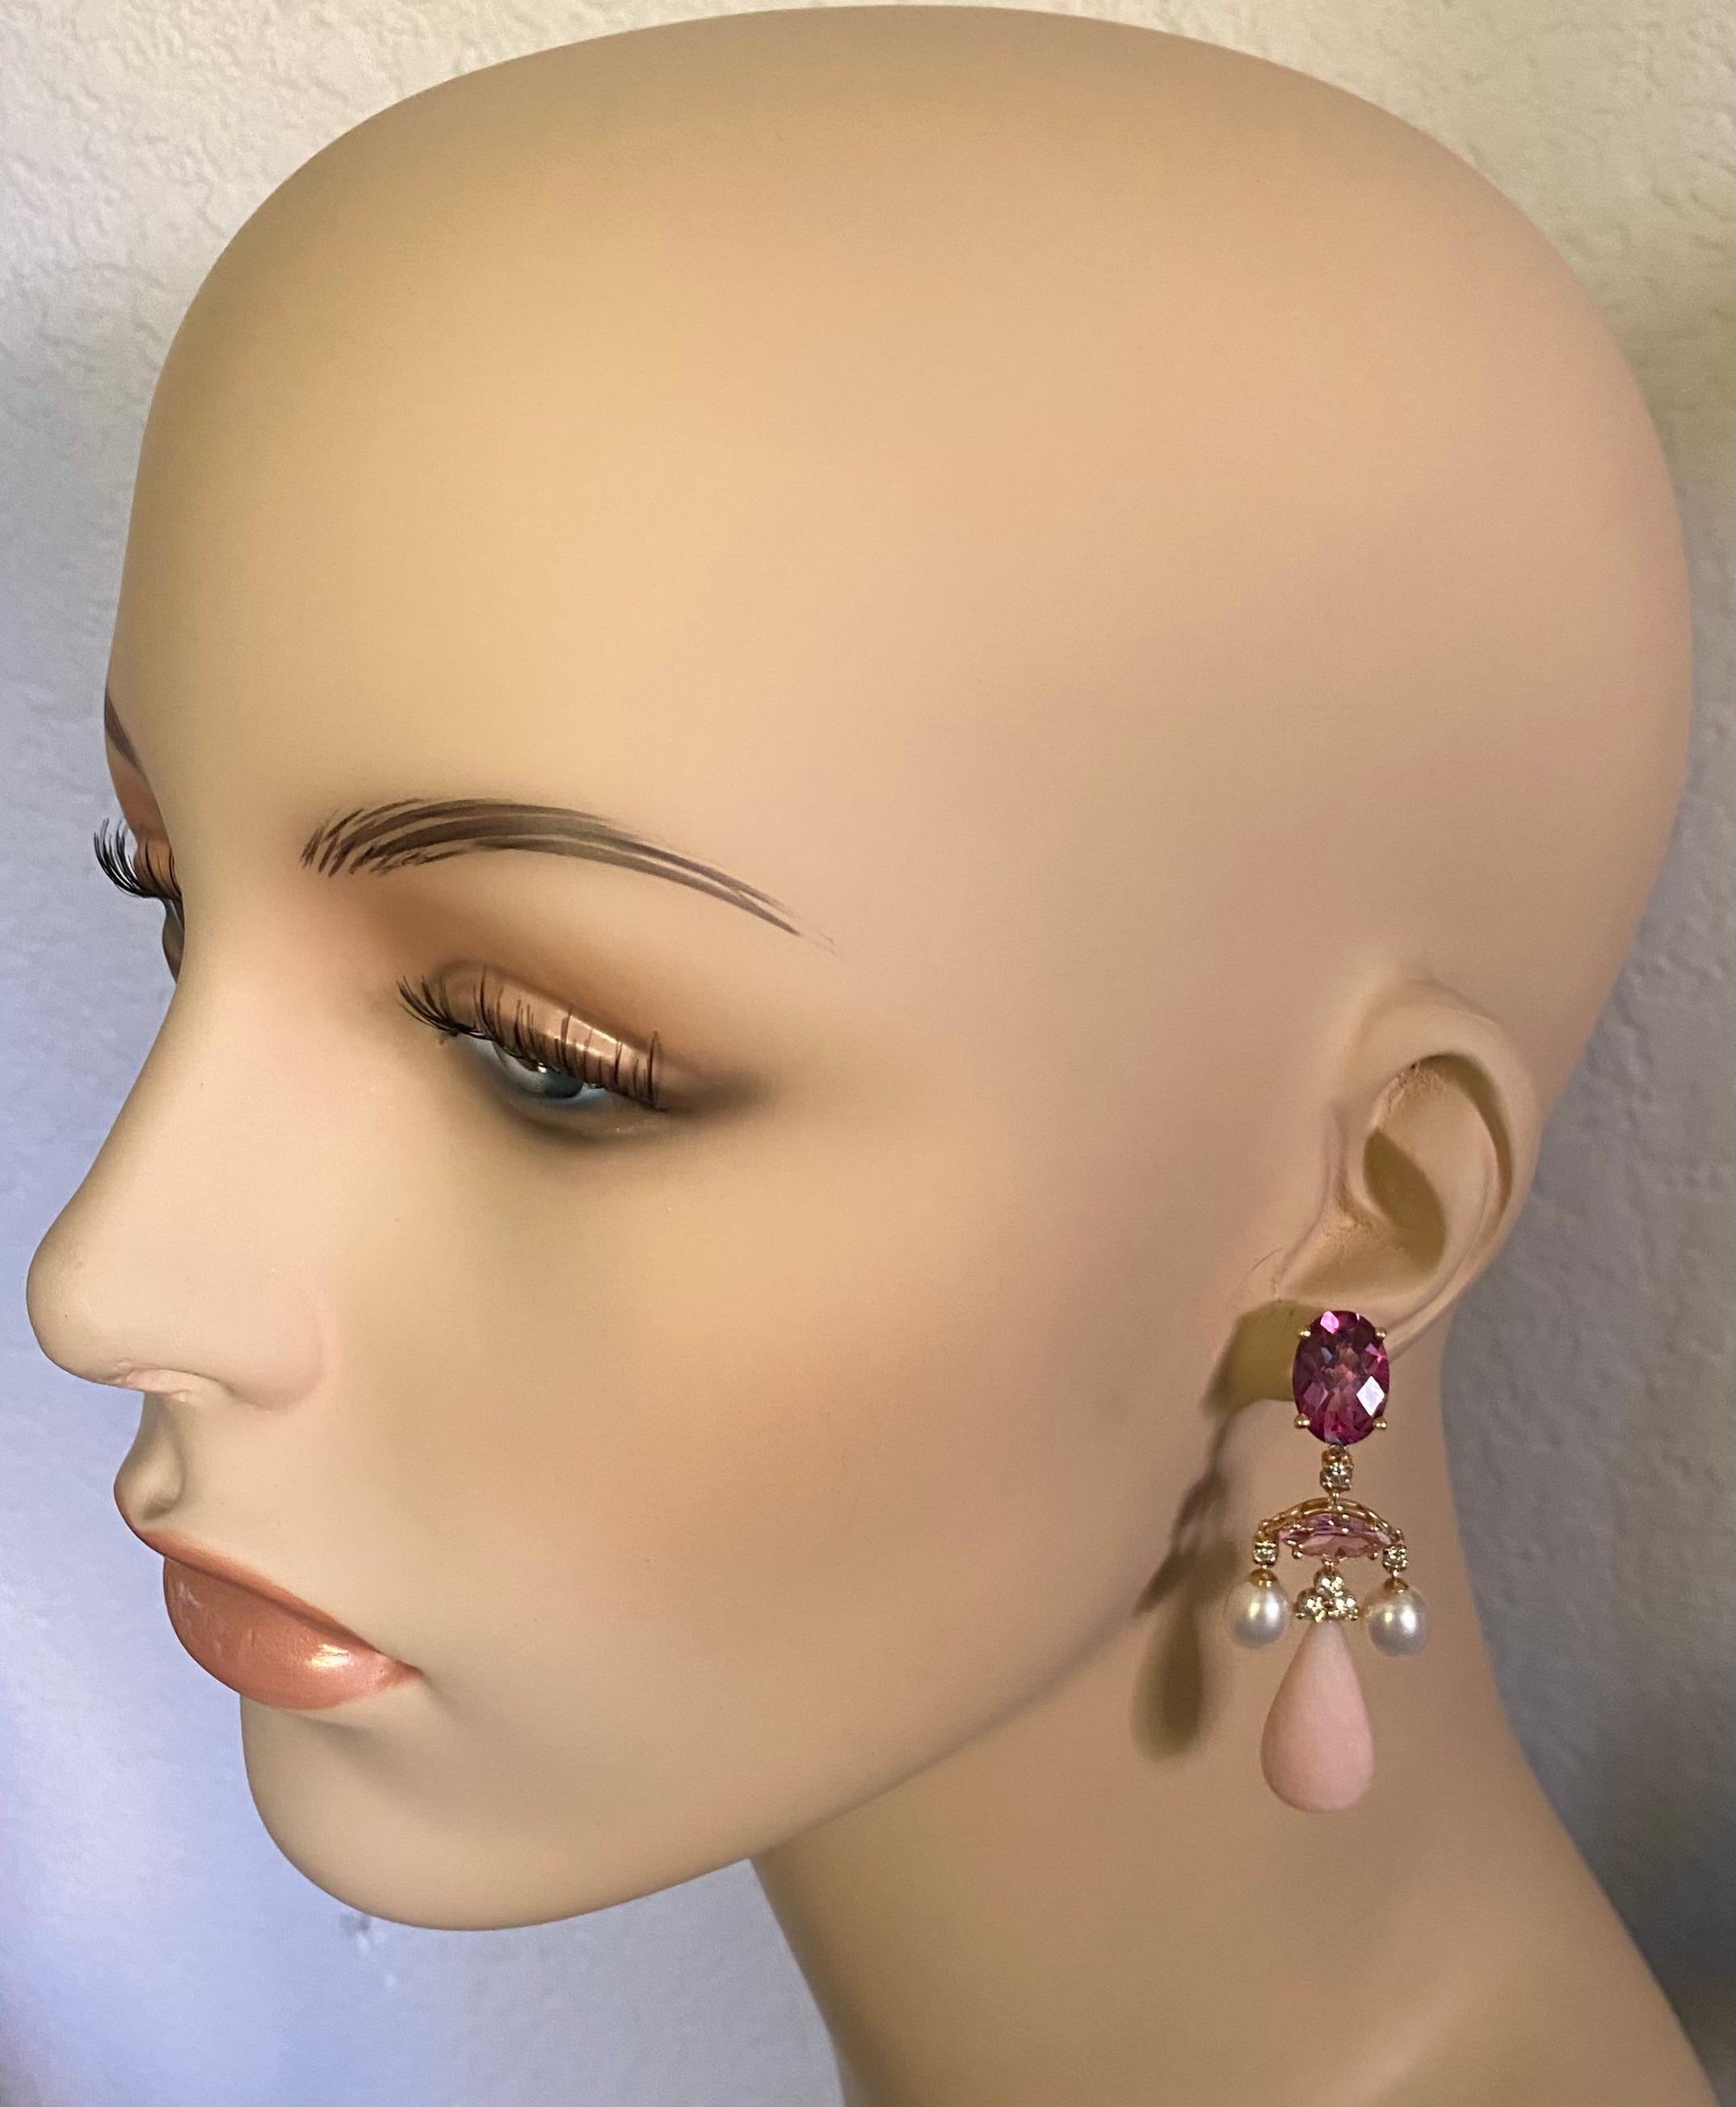 Rosafarbene Edelsteine werden in diesen eleganten Kronleuchter-Ohrringen zur Schau gestellt.  Ein tiefrosa Topas (Herkunft: Brasilien) in ovaler Form und mit Schachbrettschliff krönt die Komposition.  Ein zart gefärbter rosafarbener Turmalin im